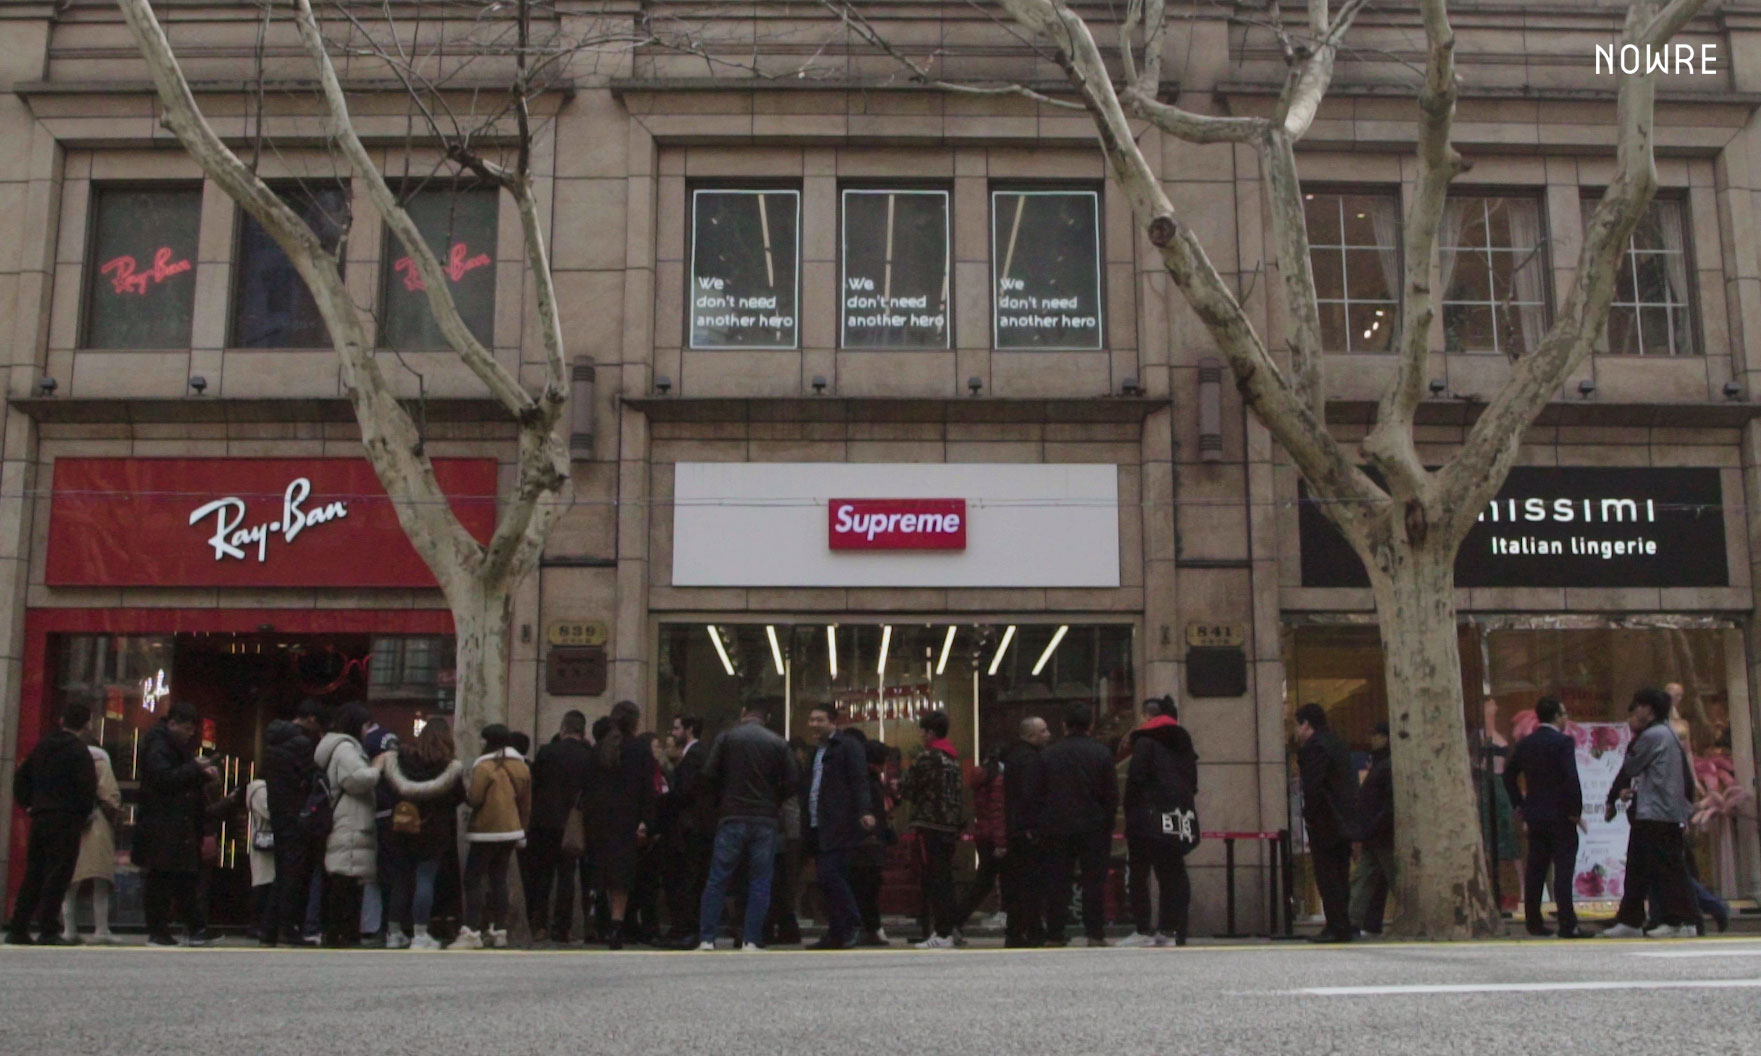 “Supreme 意大利品牌”，上海店今天开门了 